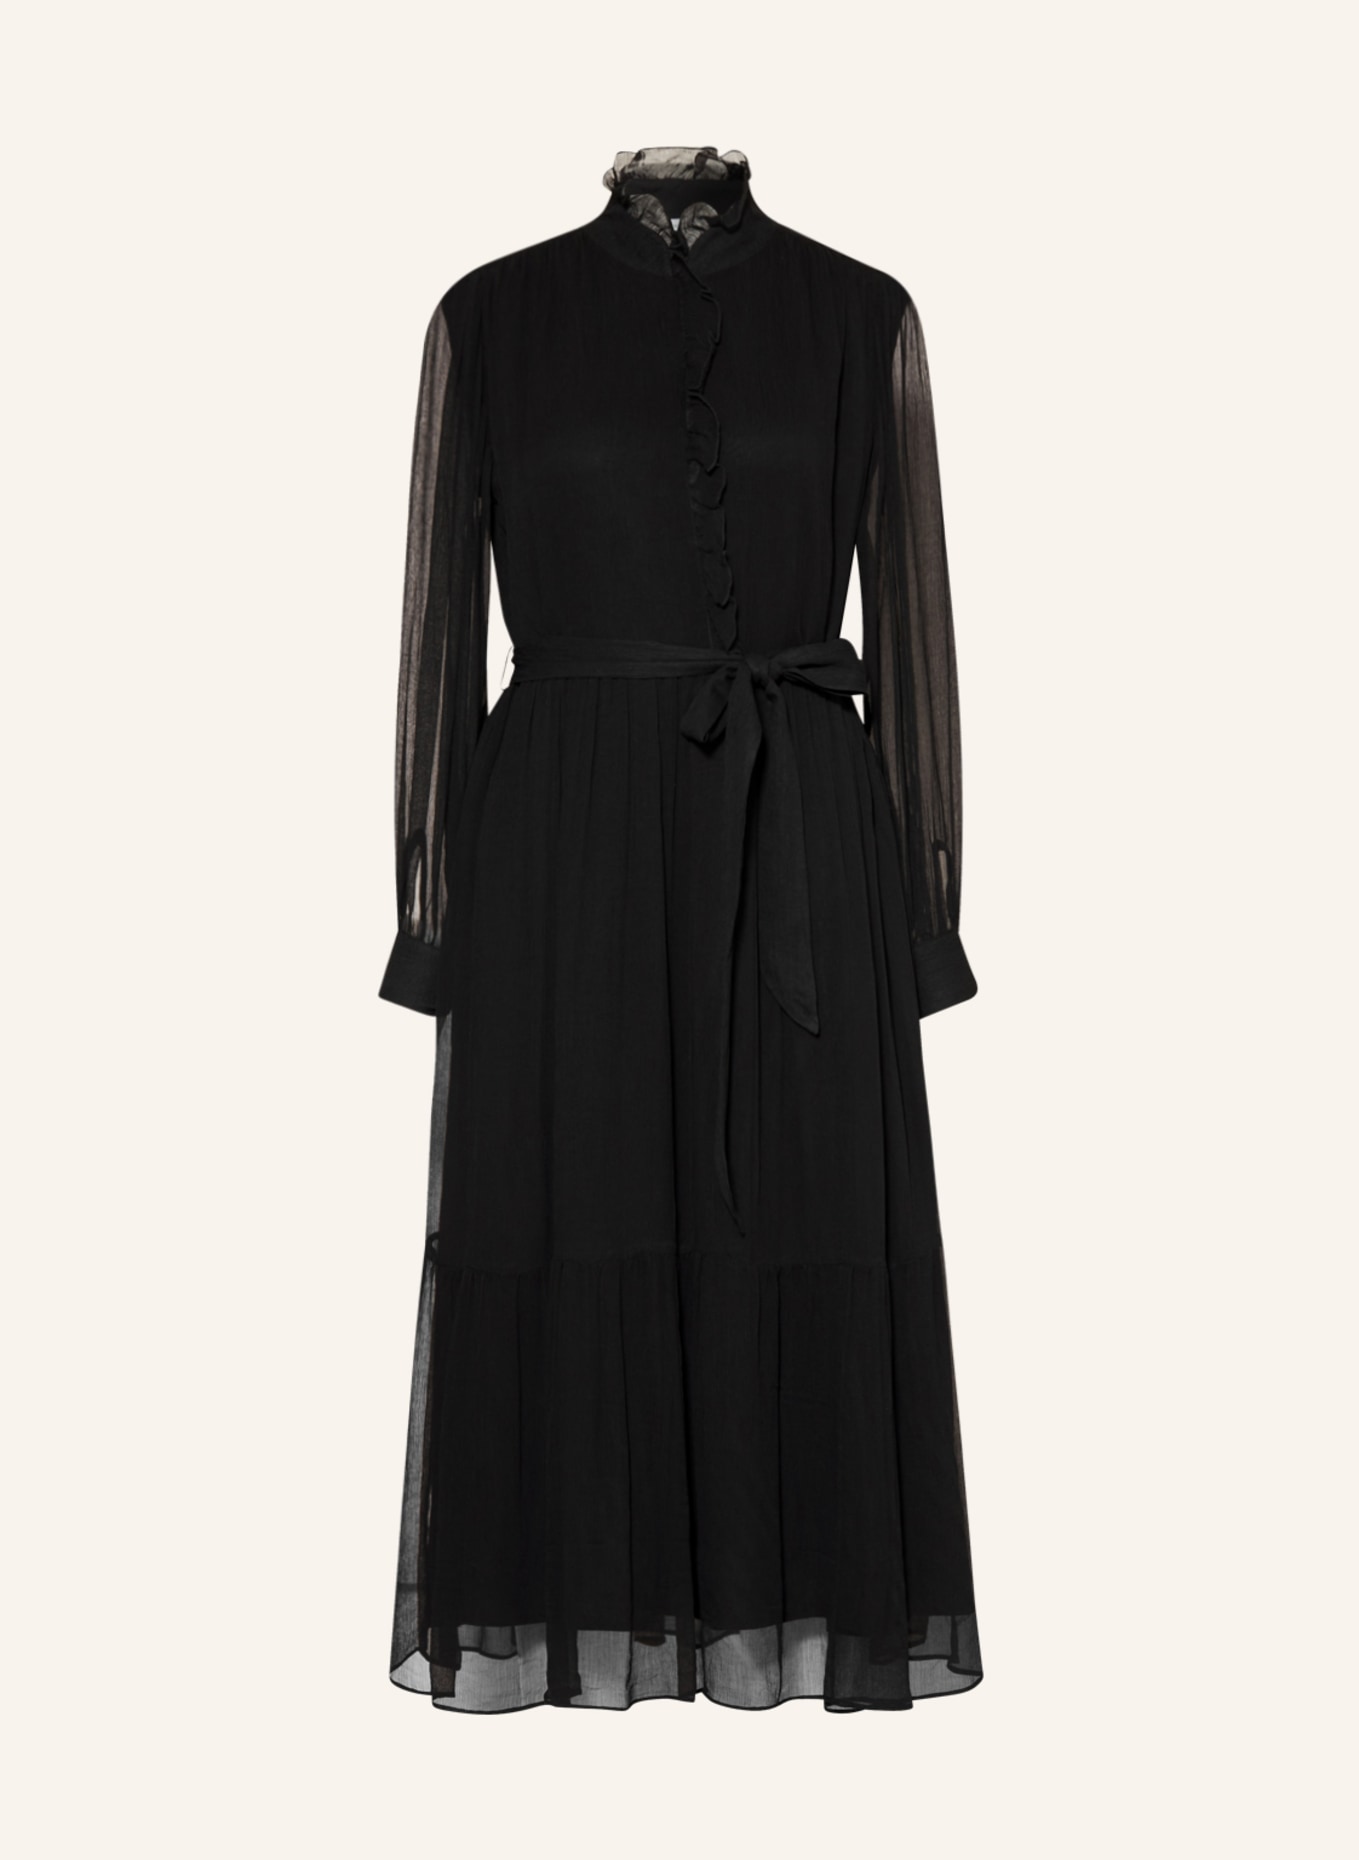 MRS & HUGS Dress, Color: BLACK (Image 1)